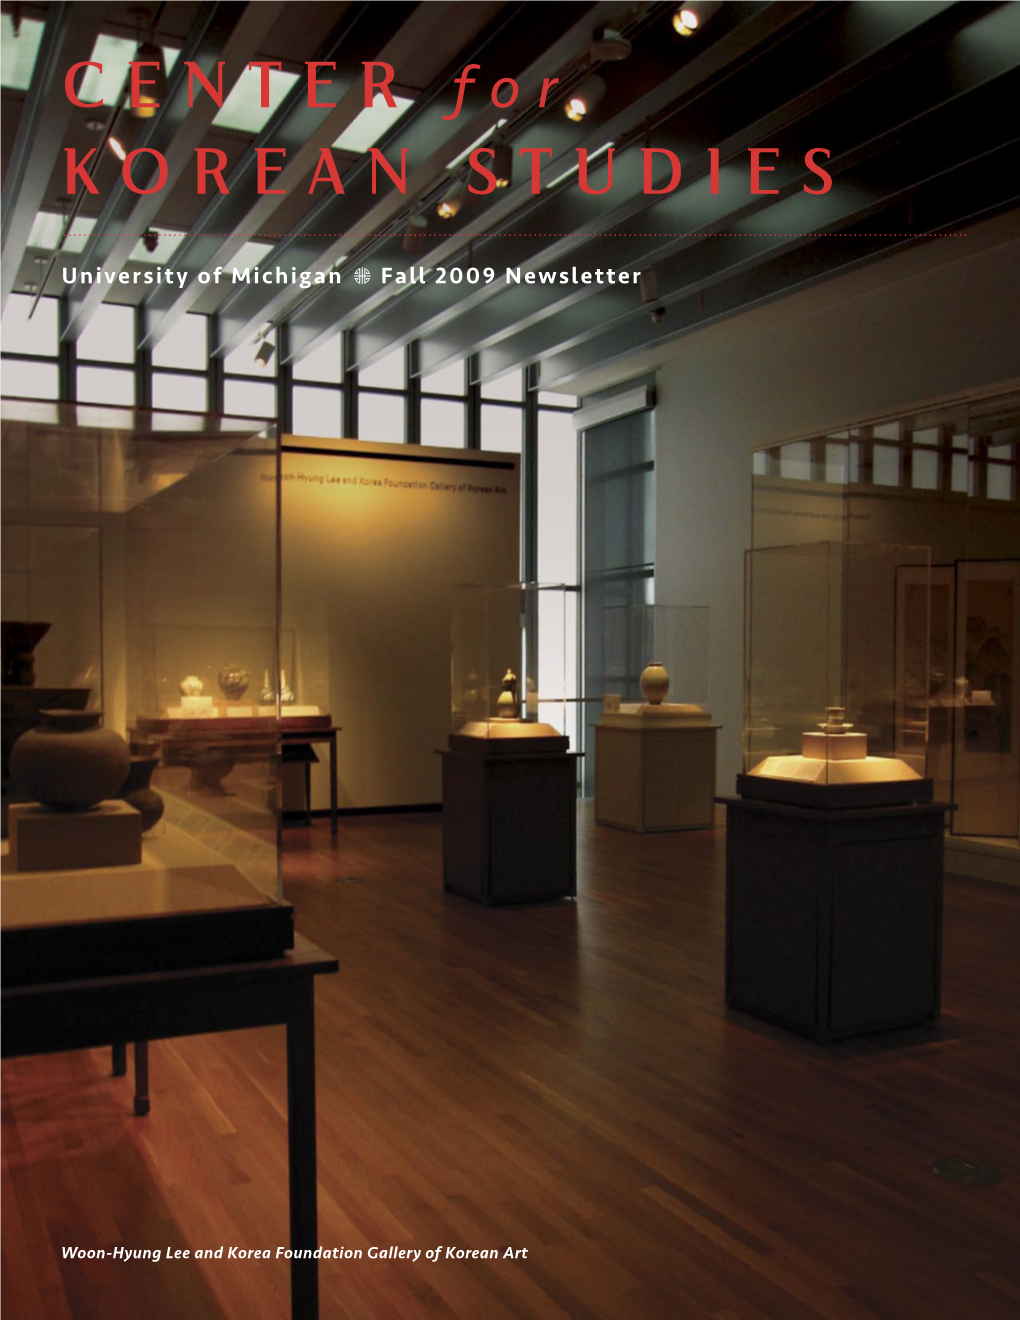 Center for Korean Studies (CKS) at Michigan